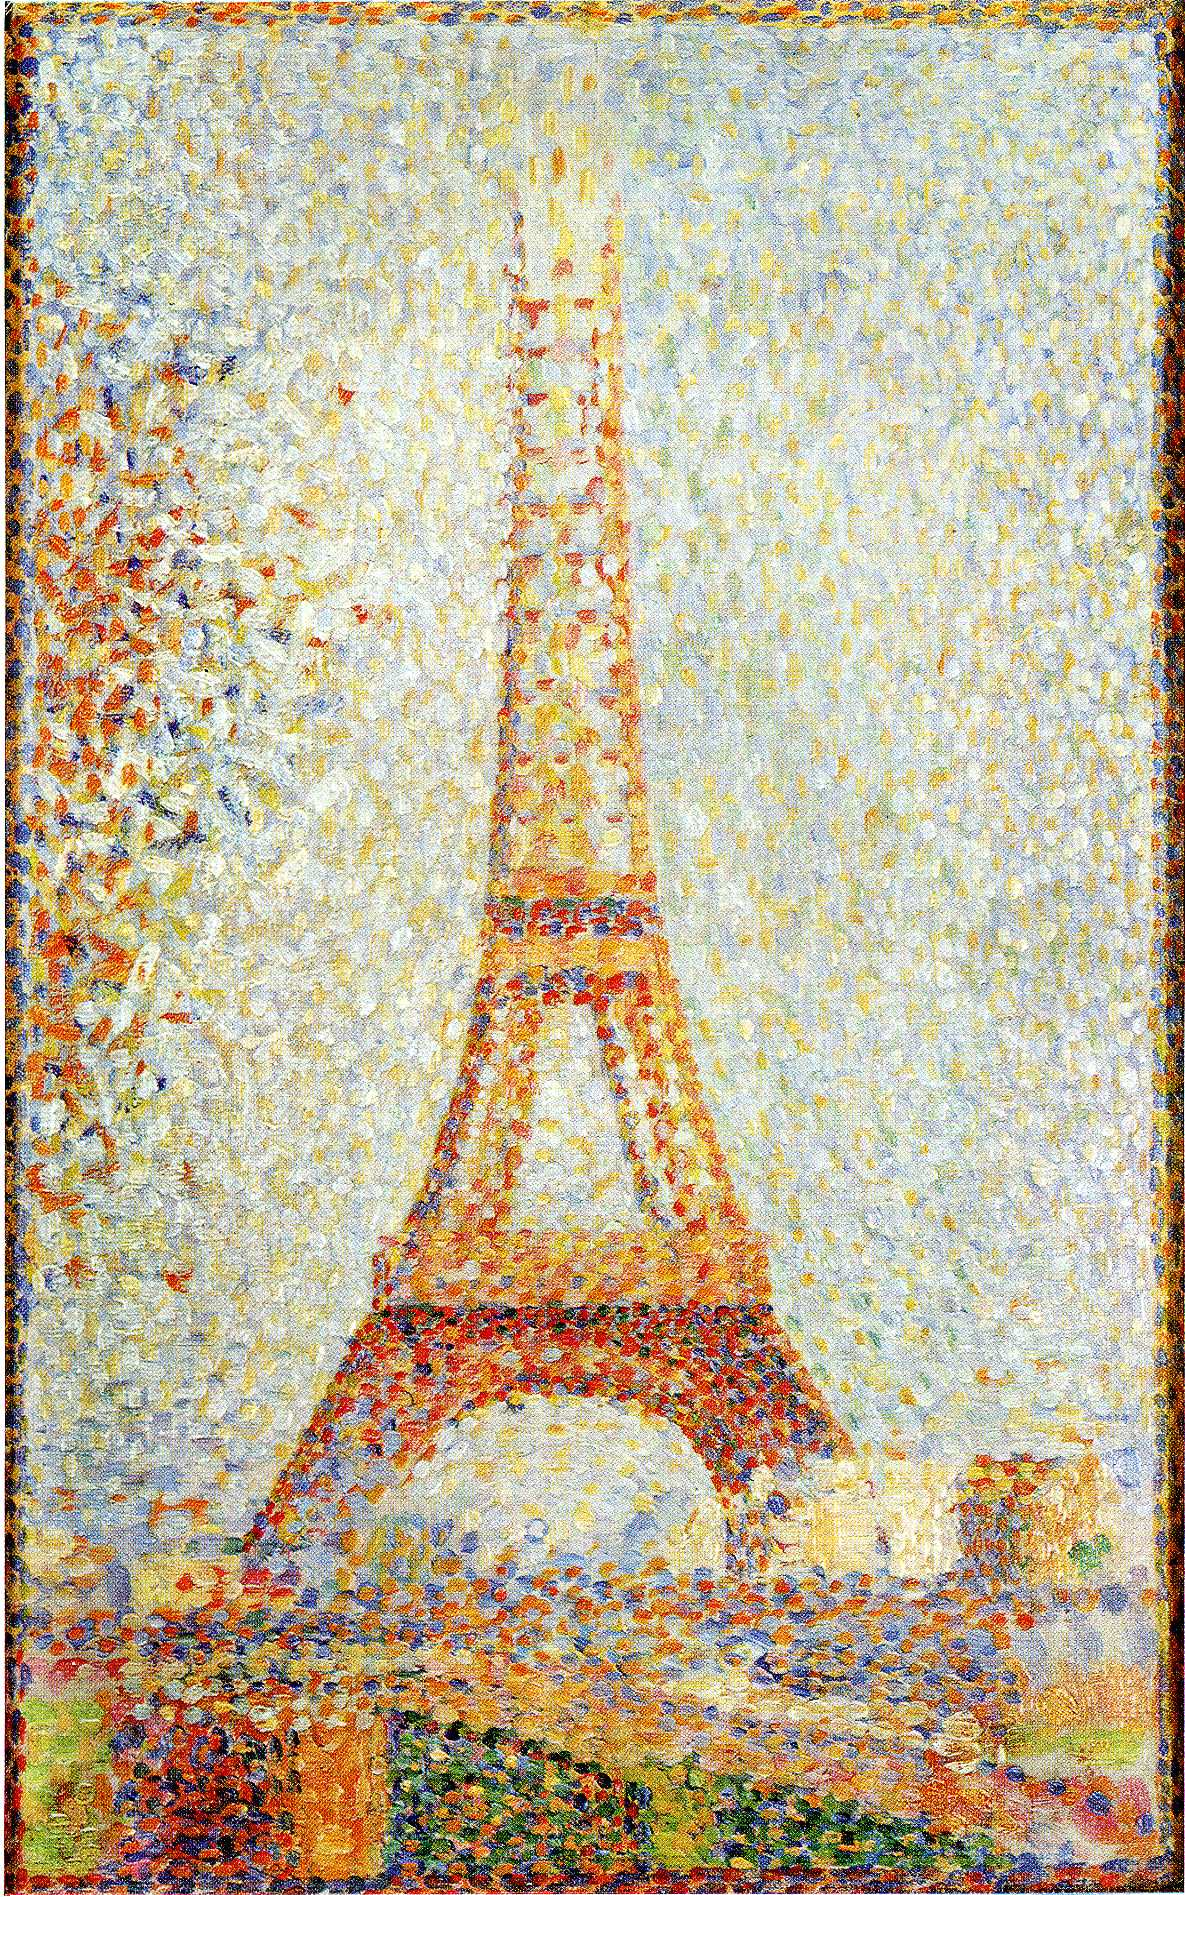 De Eiffeltoren by Georges Seurat - 1889 - 24 x 15 cm 